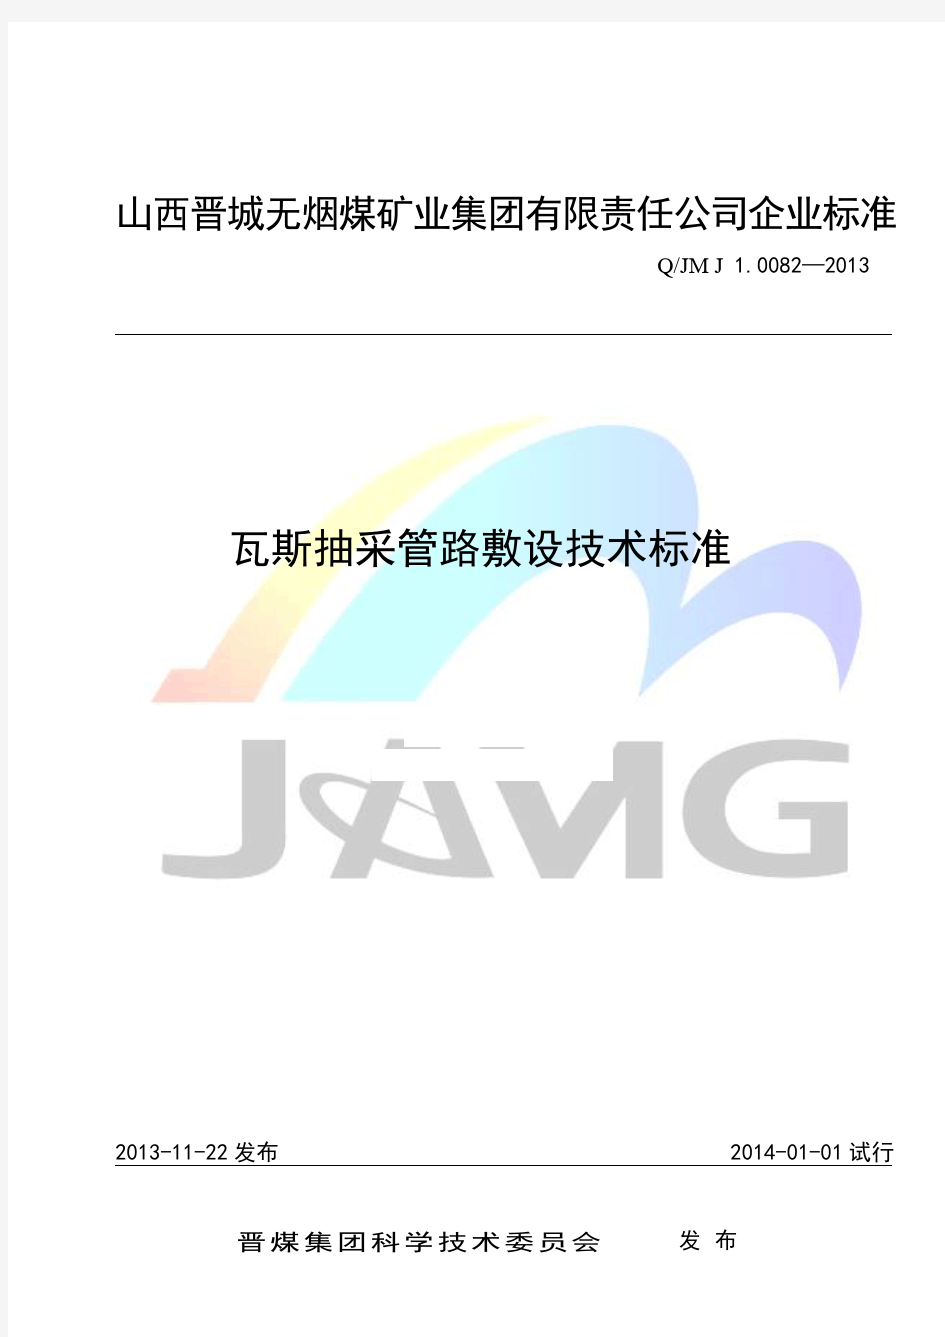 QJM J1.0082-2014瓦斯抽放管路敷设技术标准